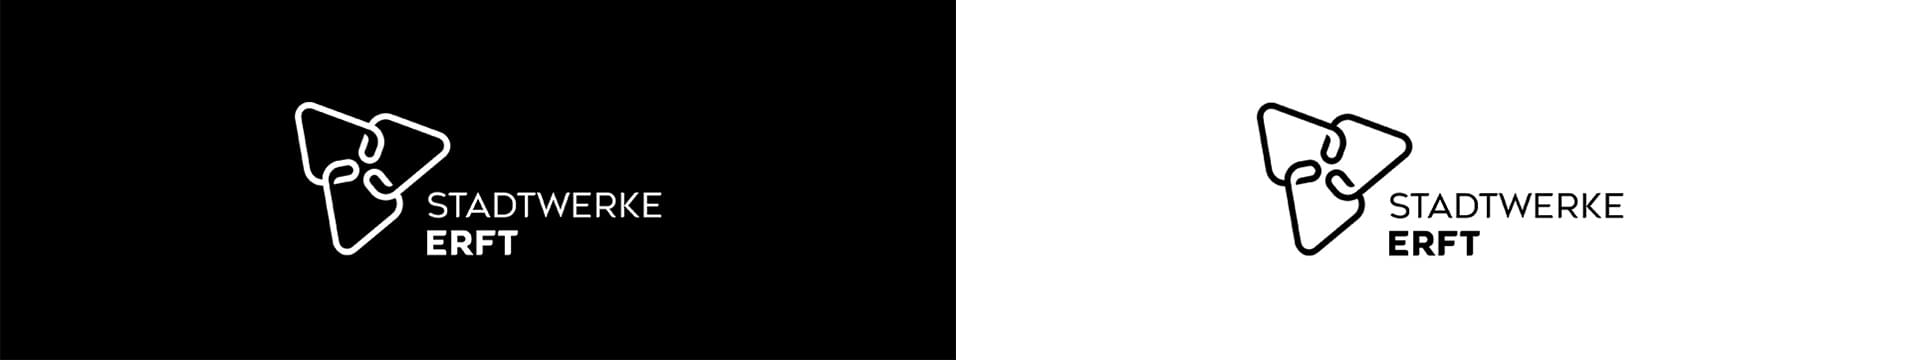 Das neue Logo der Stadtwerke Erft in schwarz/weiß // Ein Projektbeispiel von digitalbynature®